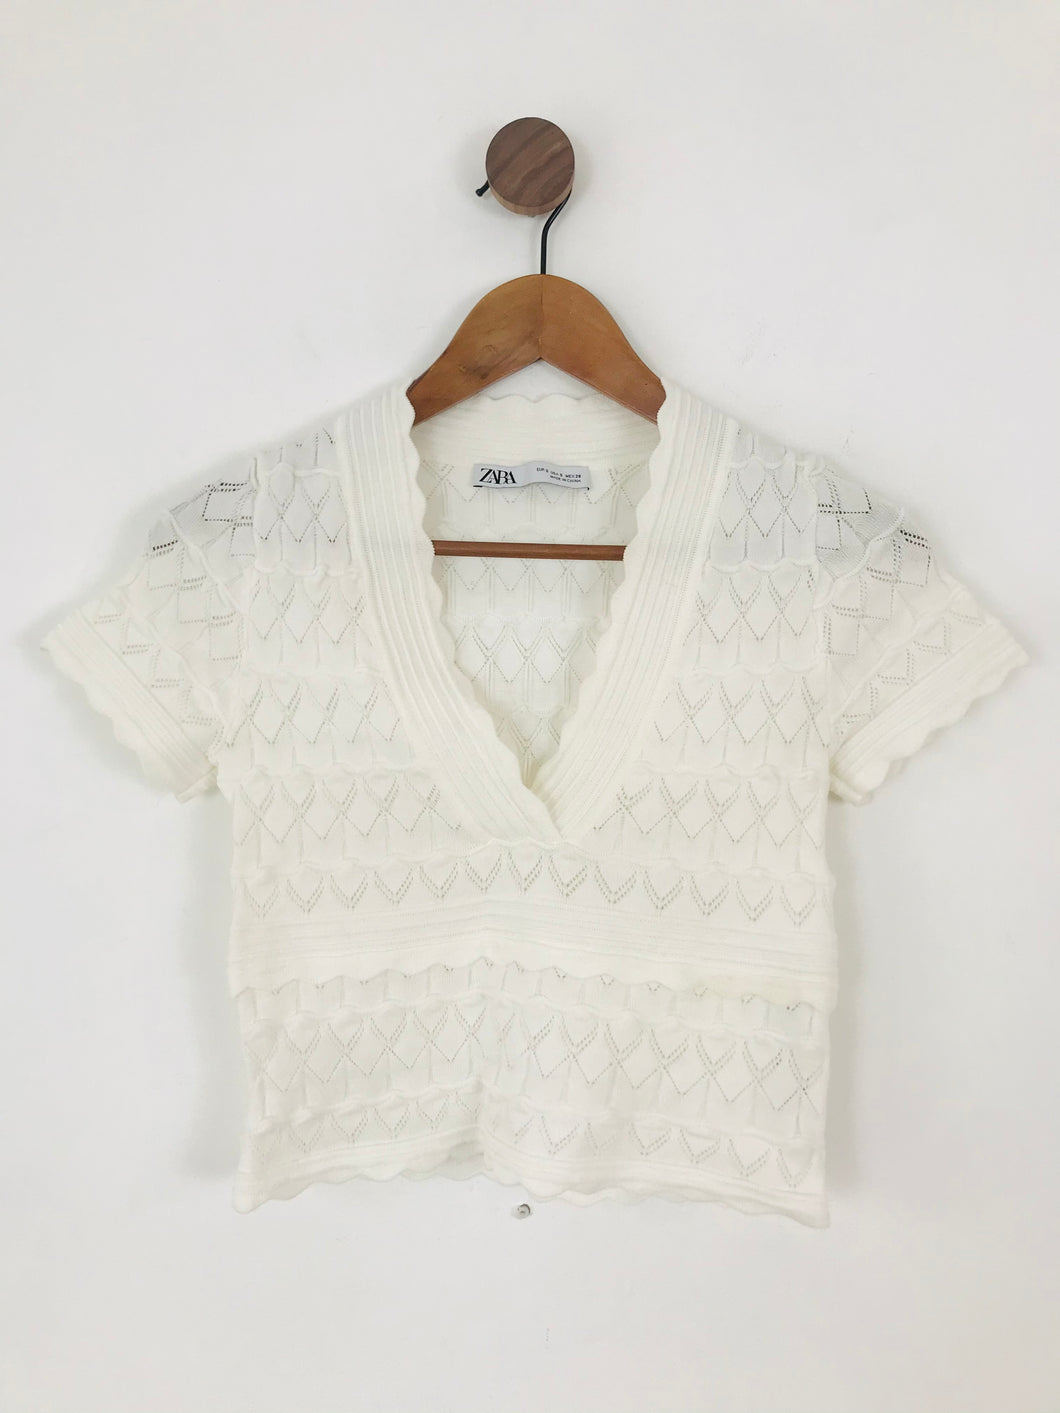 Zara Women’s V Neck Crochet Cropped Top | S UK8 | White